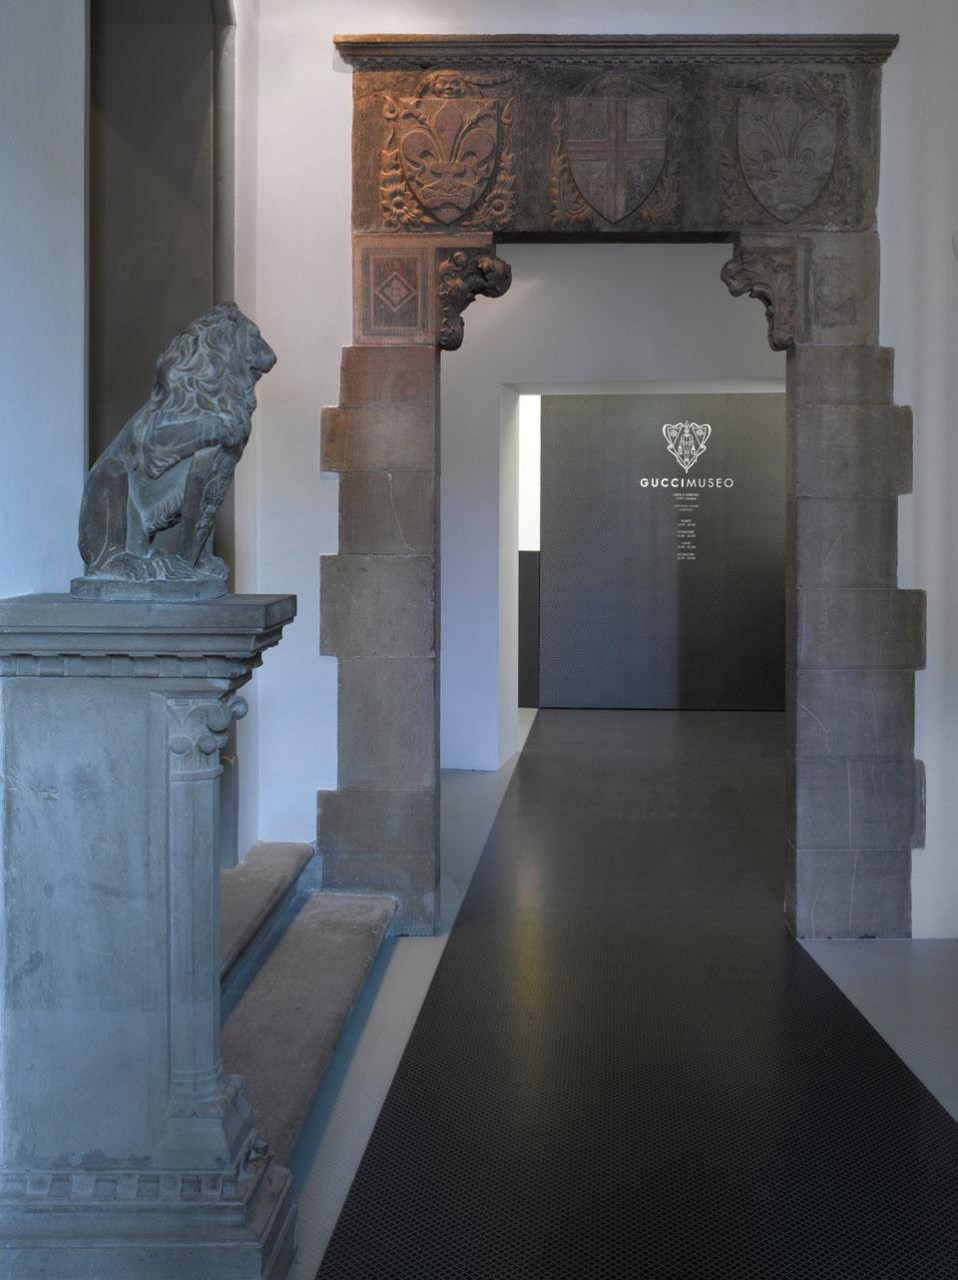 L'ingresso del Gucci Museo. Photo courtesy of Richard Bryant & GUCCI 